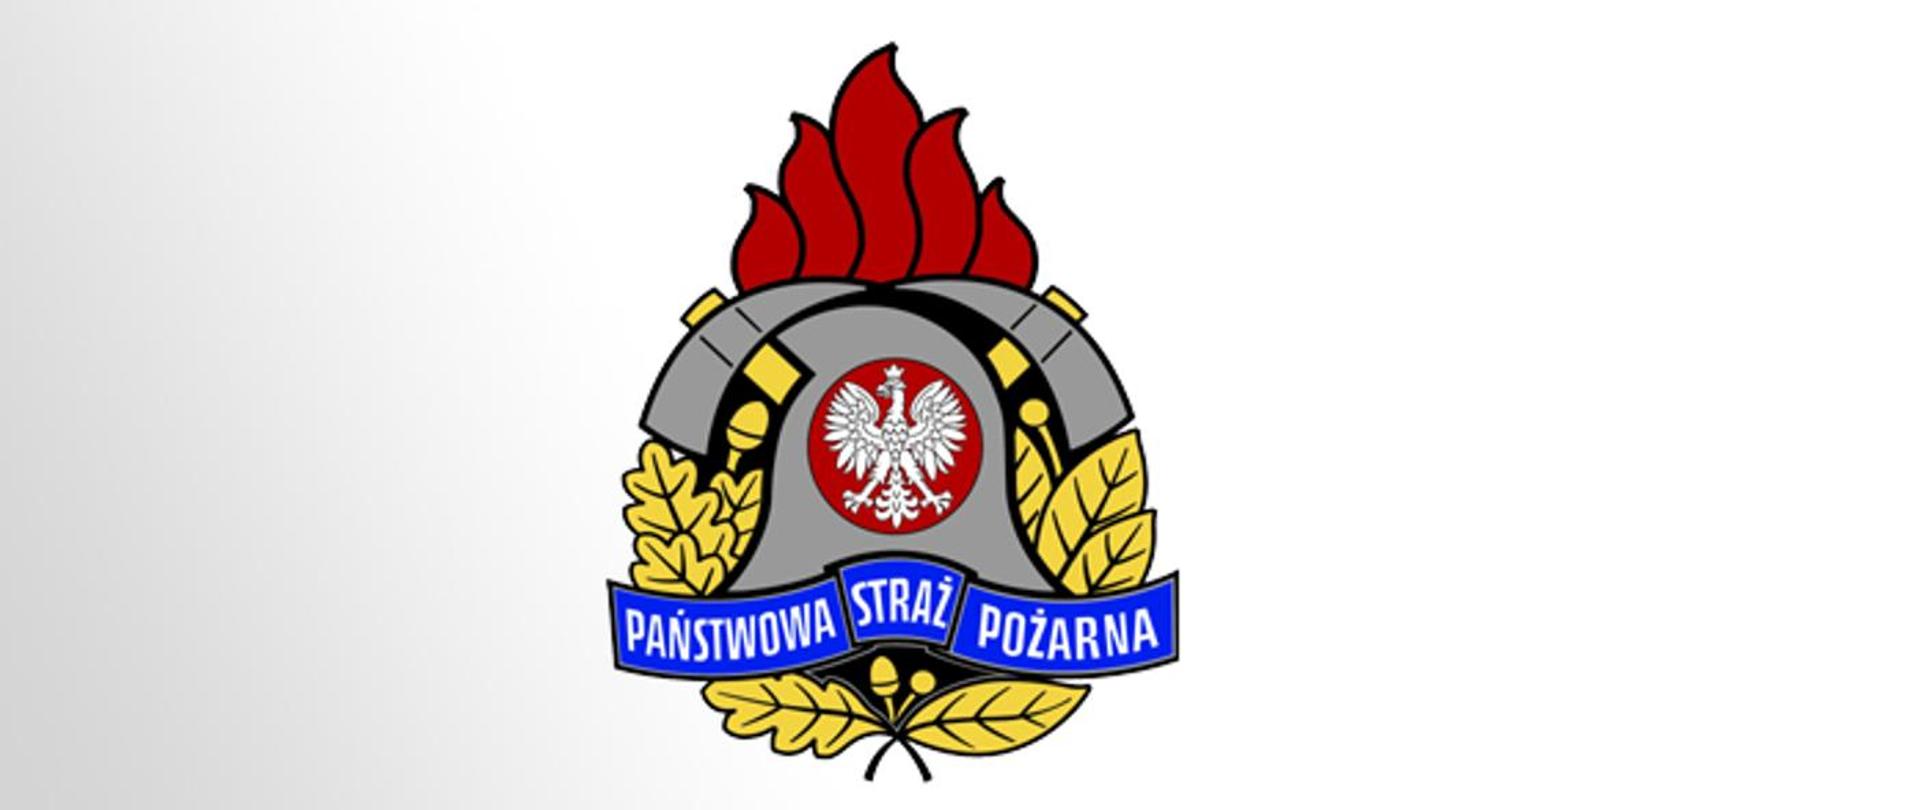 Zdjęcie przedstawia logo Państwowej Straży Pożarnej